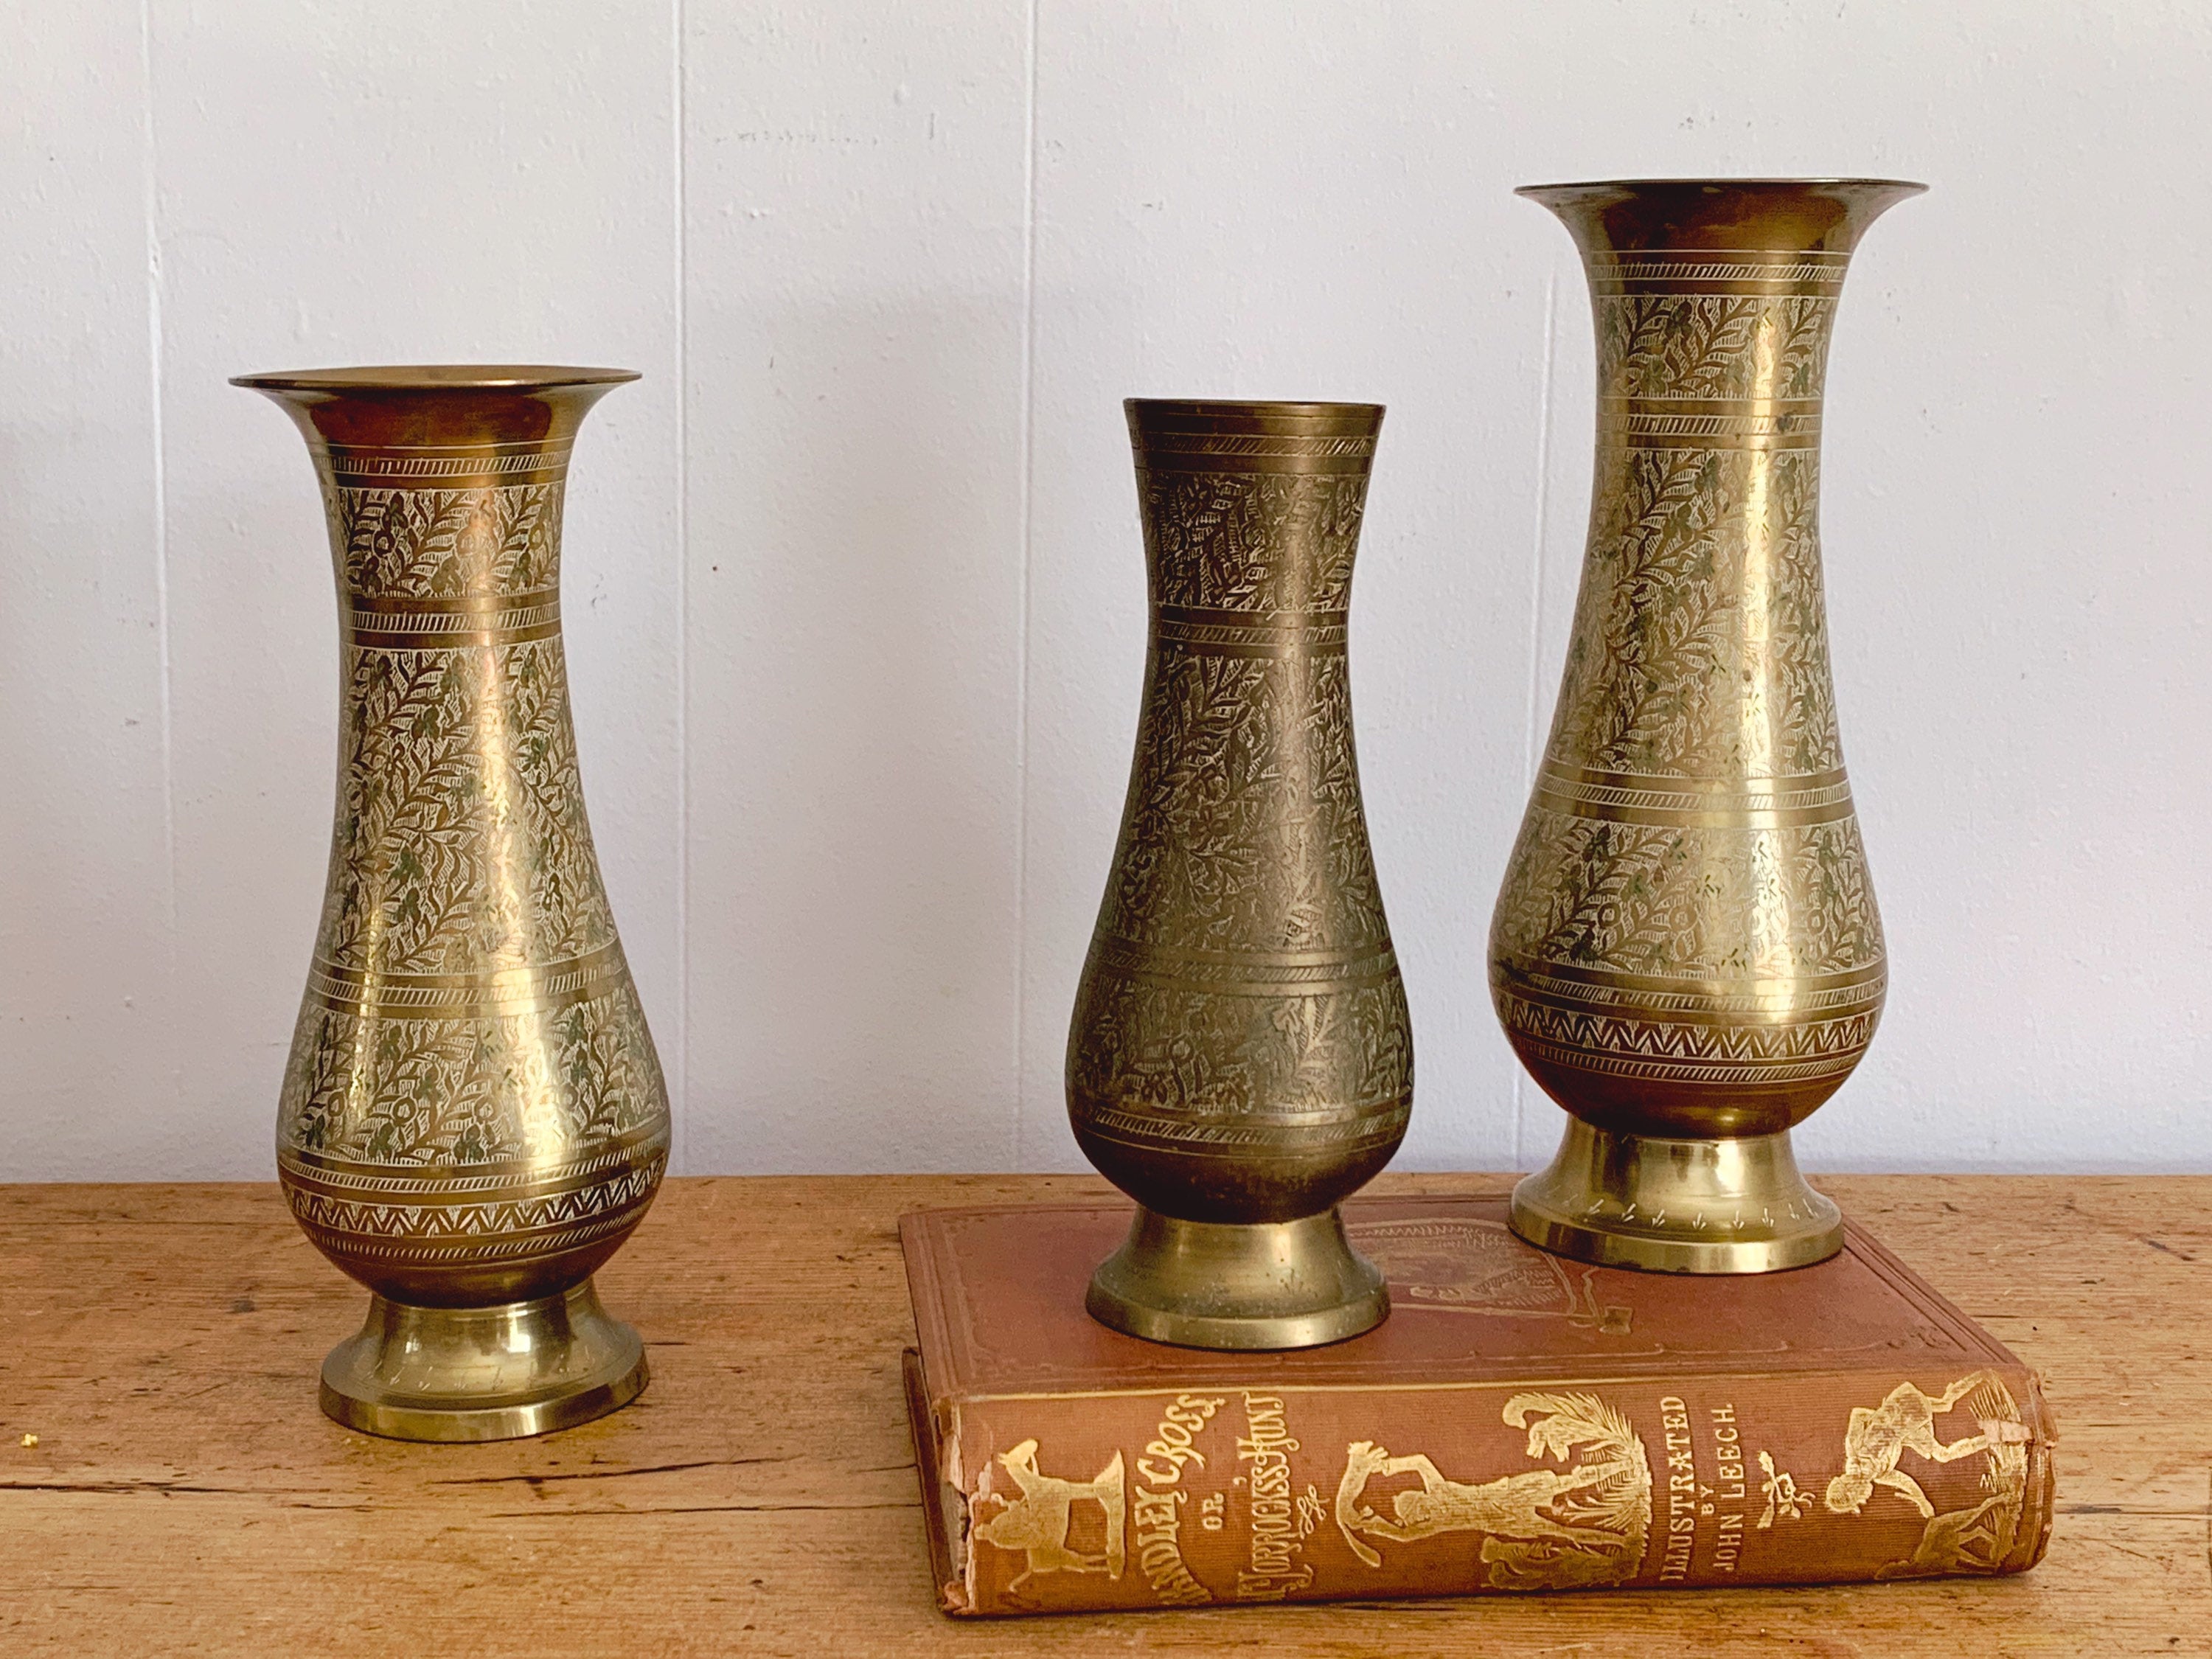 Tall Etched Brass Vase with Floral Design – Greenbrier Vintage